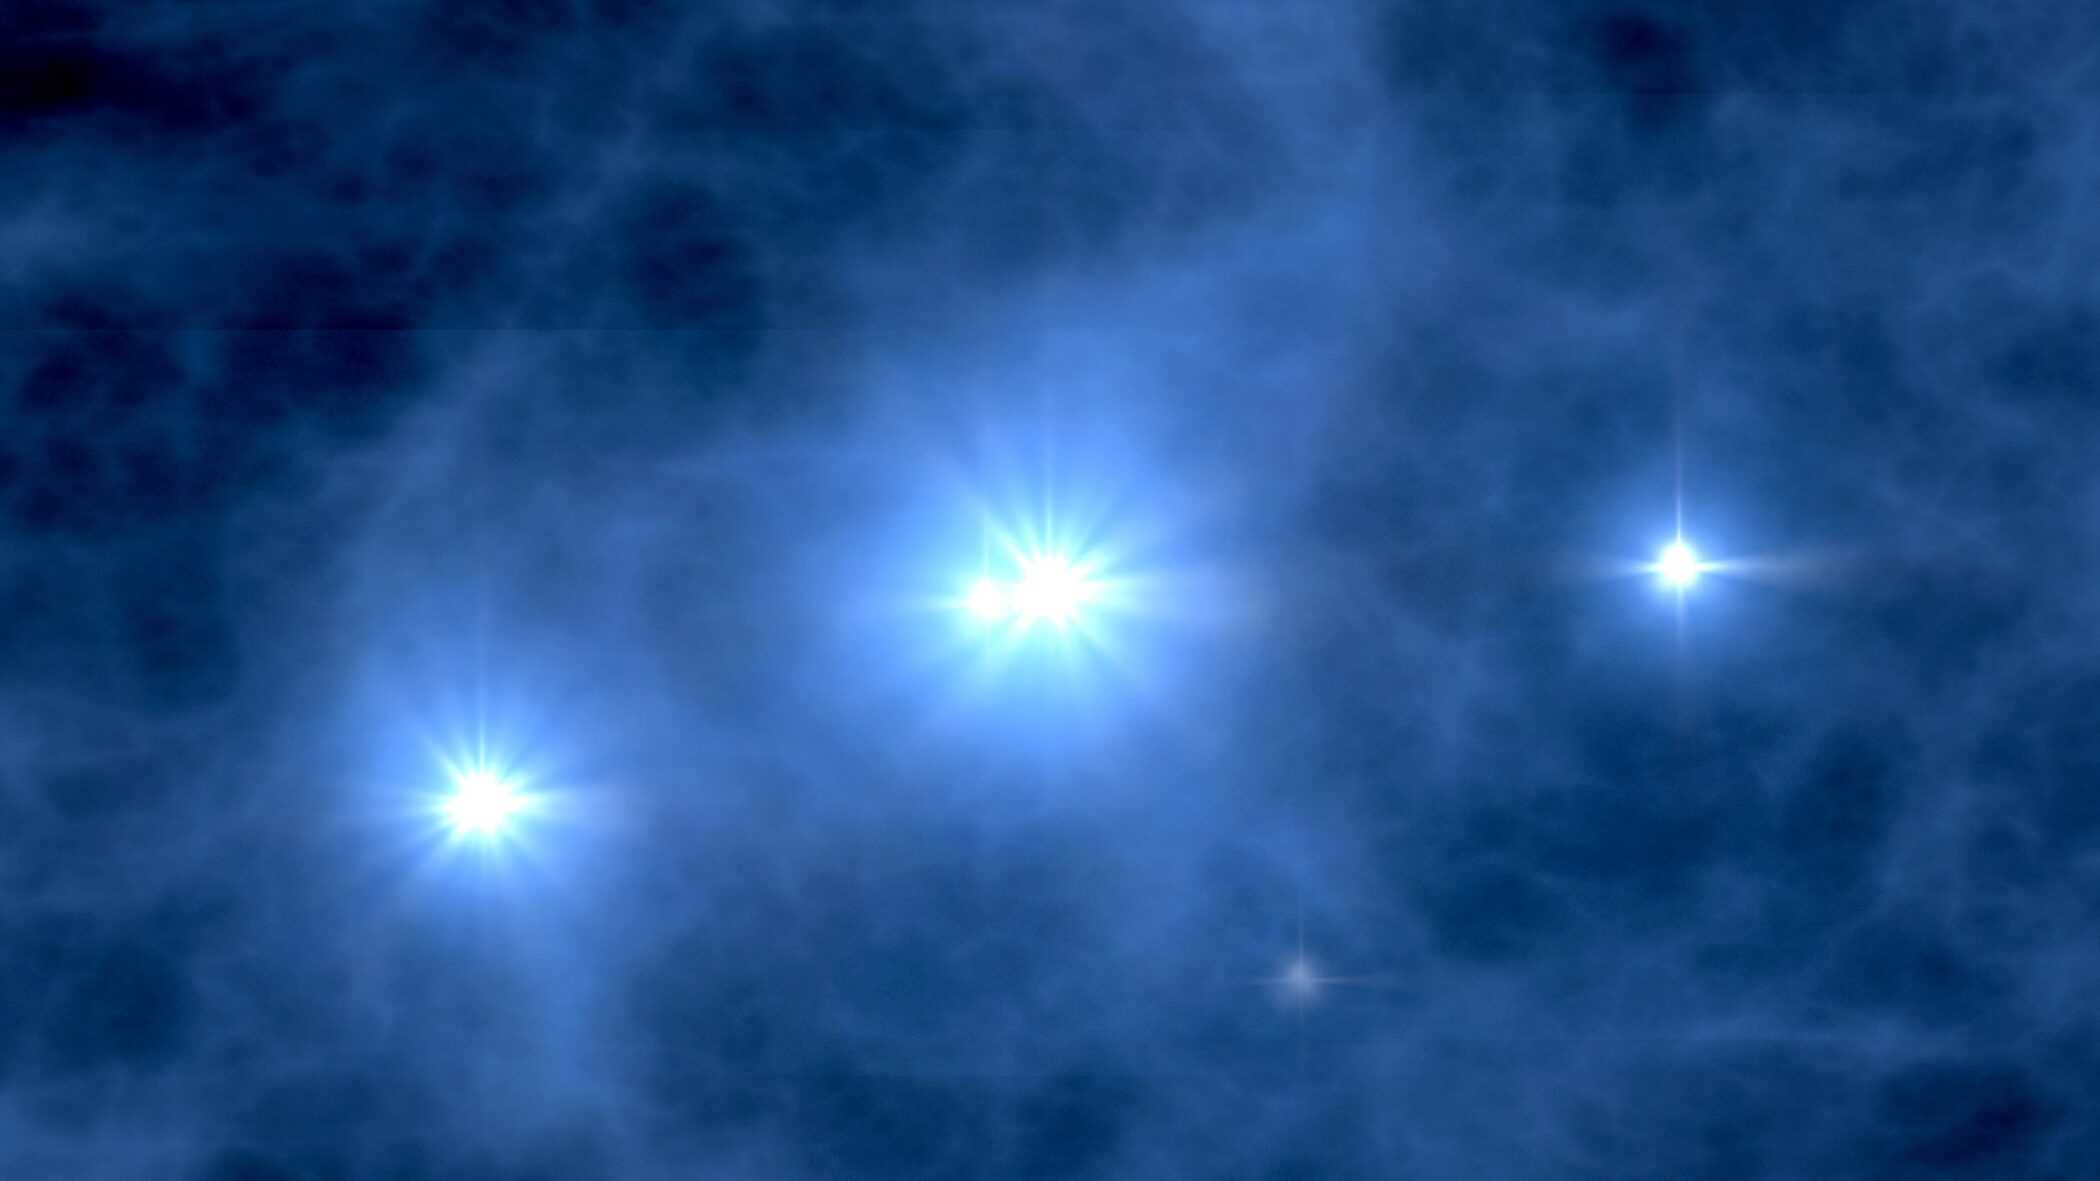 ジェイムズ・ウェッブ宇宙望遠鏡は、宇宙で初めて誕生した星を見ることができるかもしれない